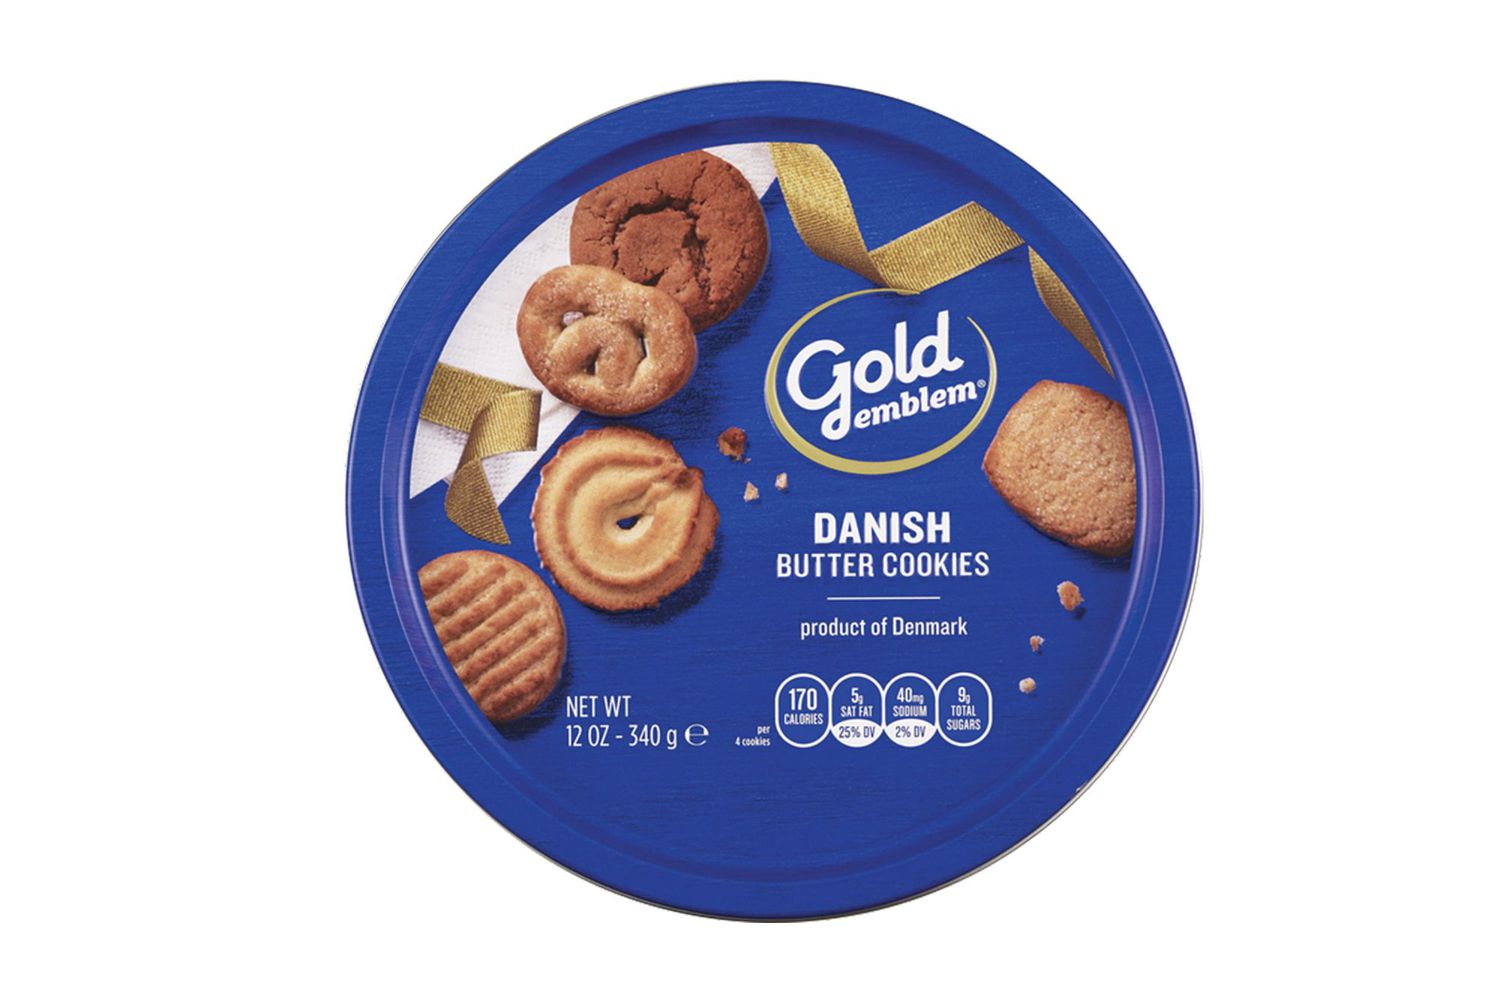 Gold Emblem Danish Butter Cookies